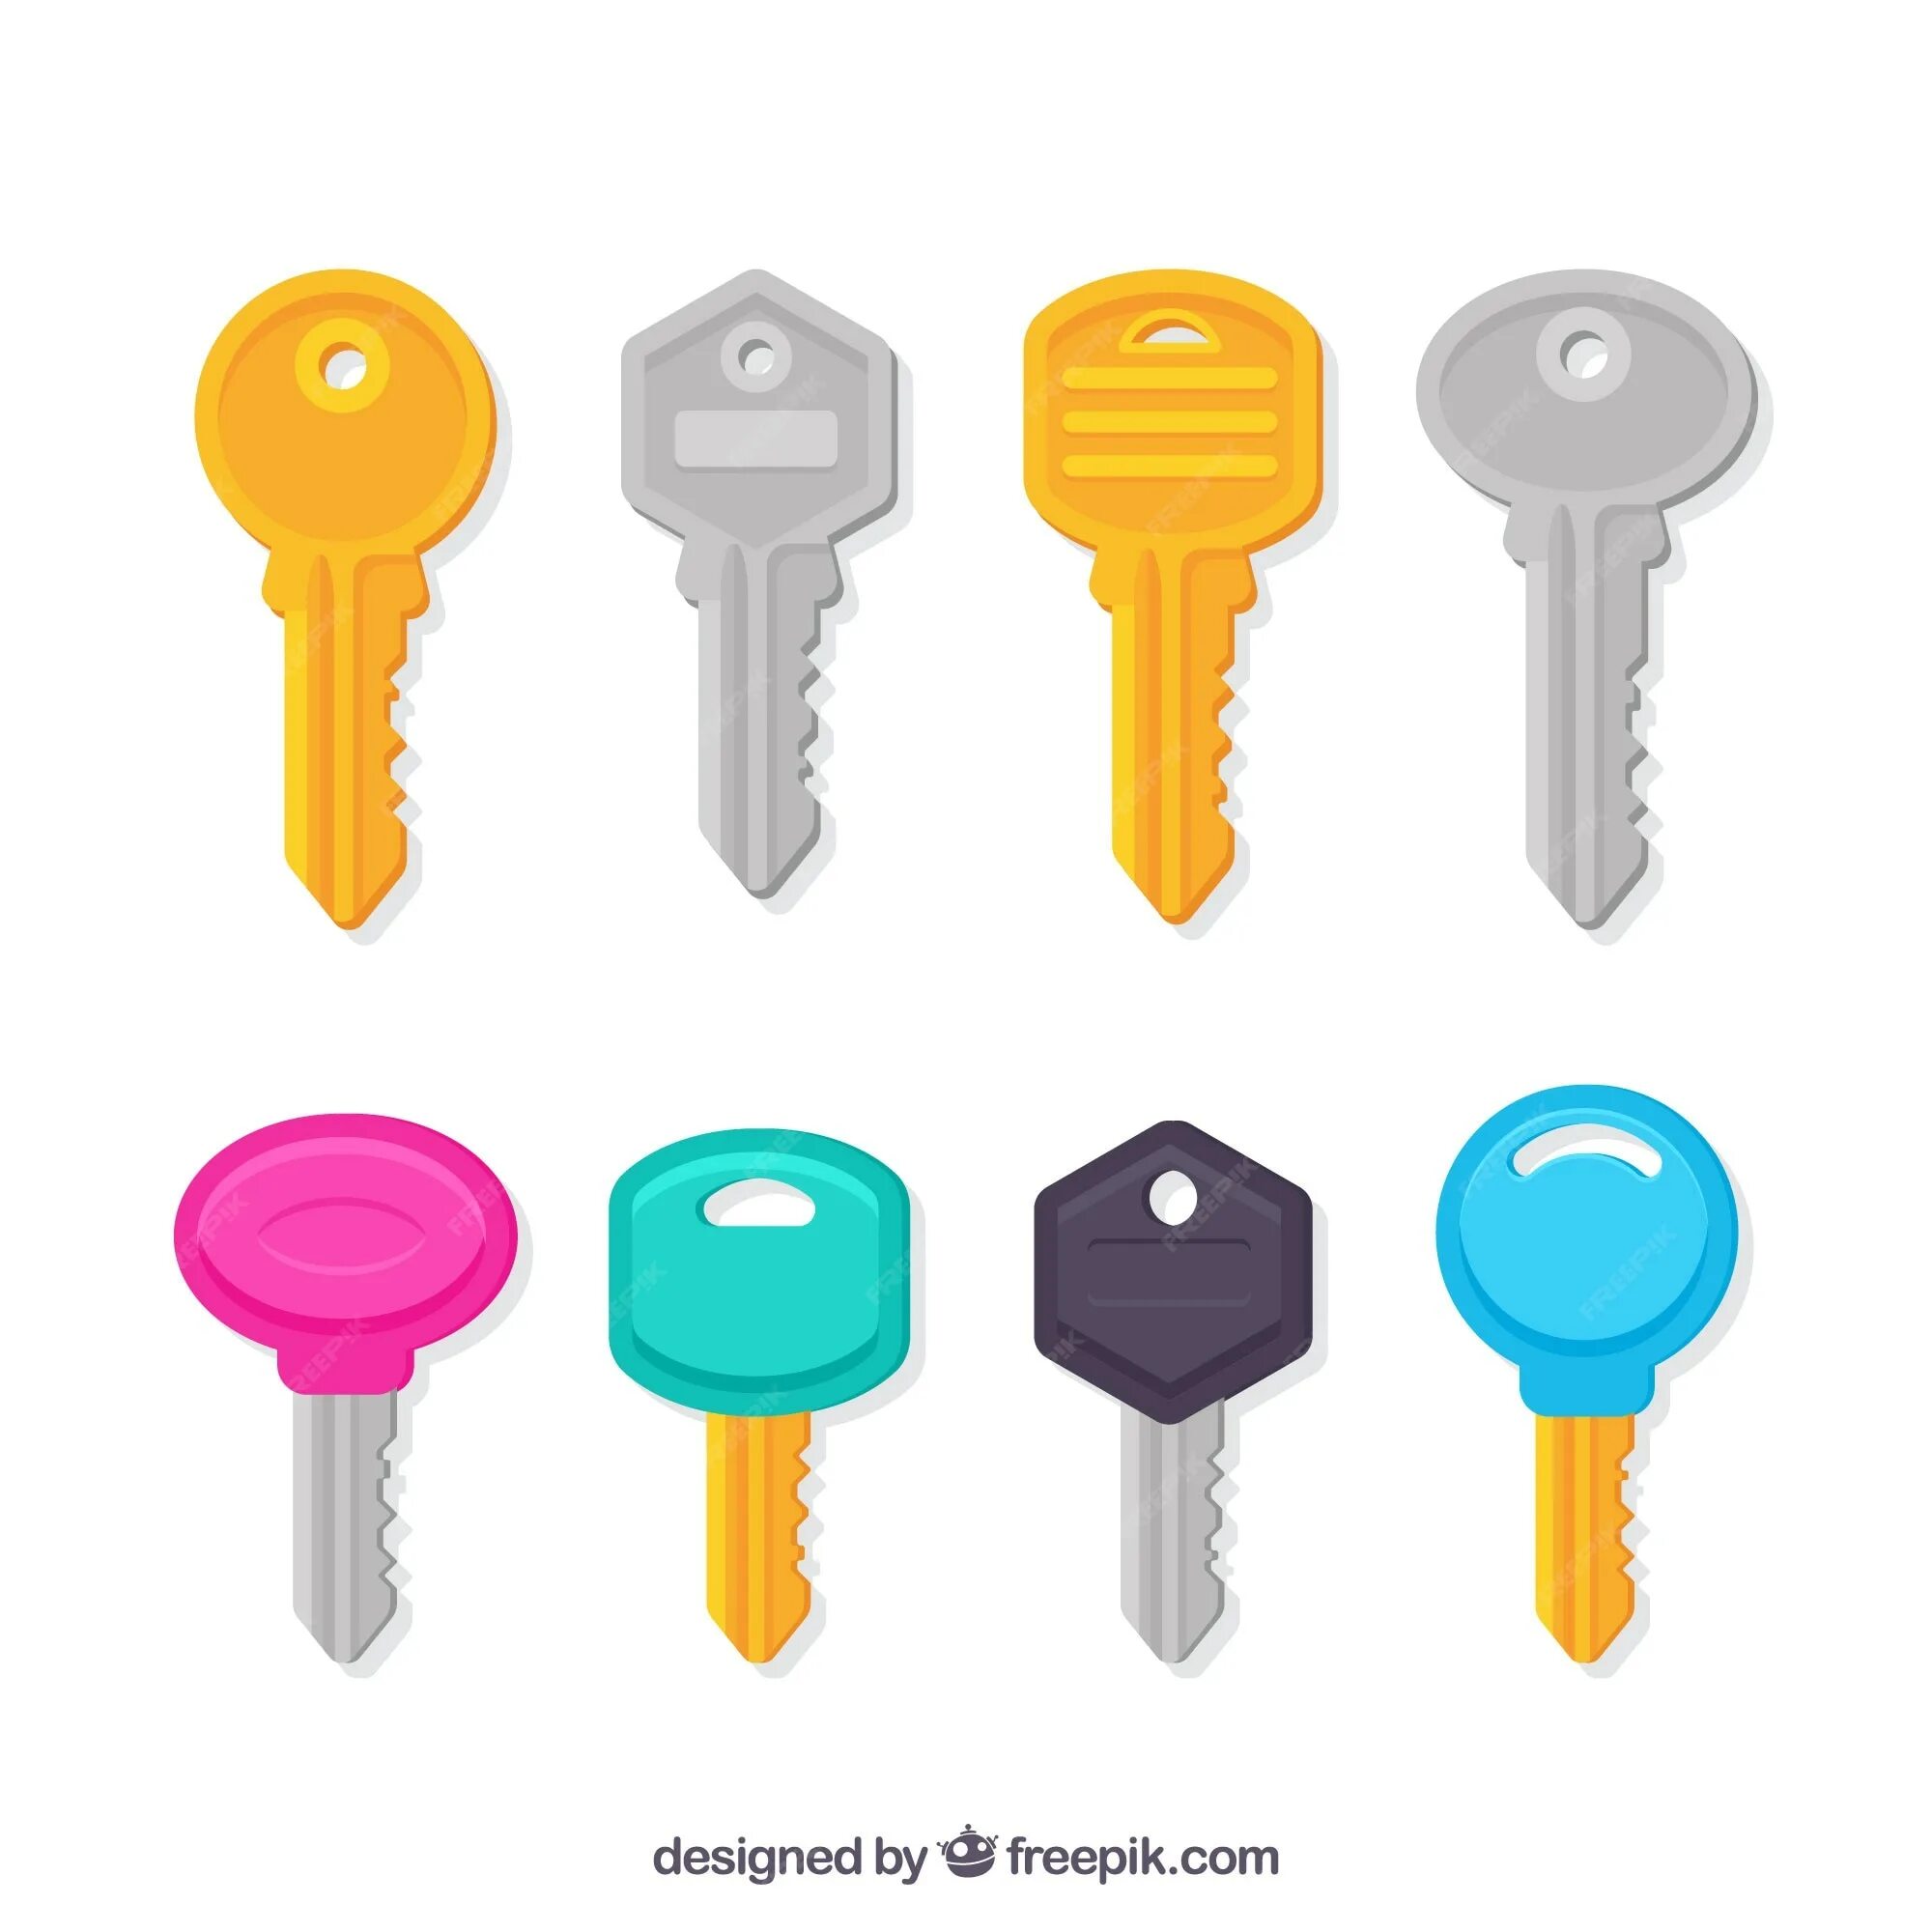 Ключи для шаров. Разноцветные ключи. Разноцветные ключи для детей. Ключи разной формы. Ключики разных цветов.